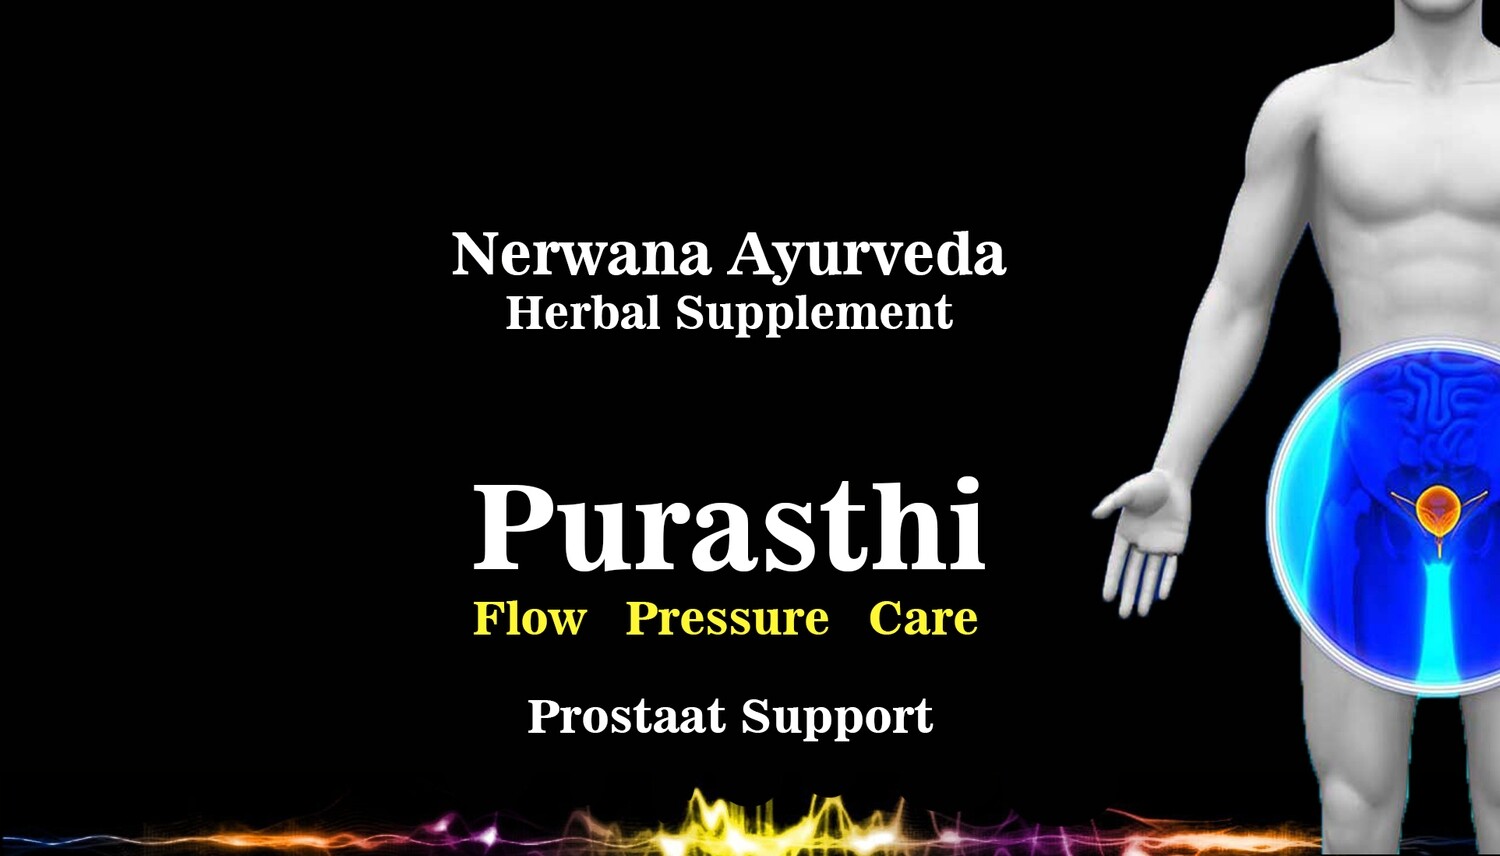 Purasthi